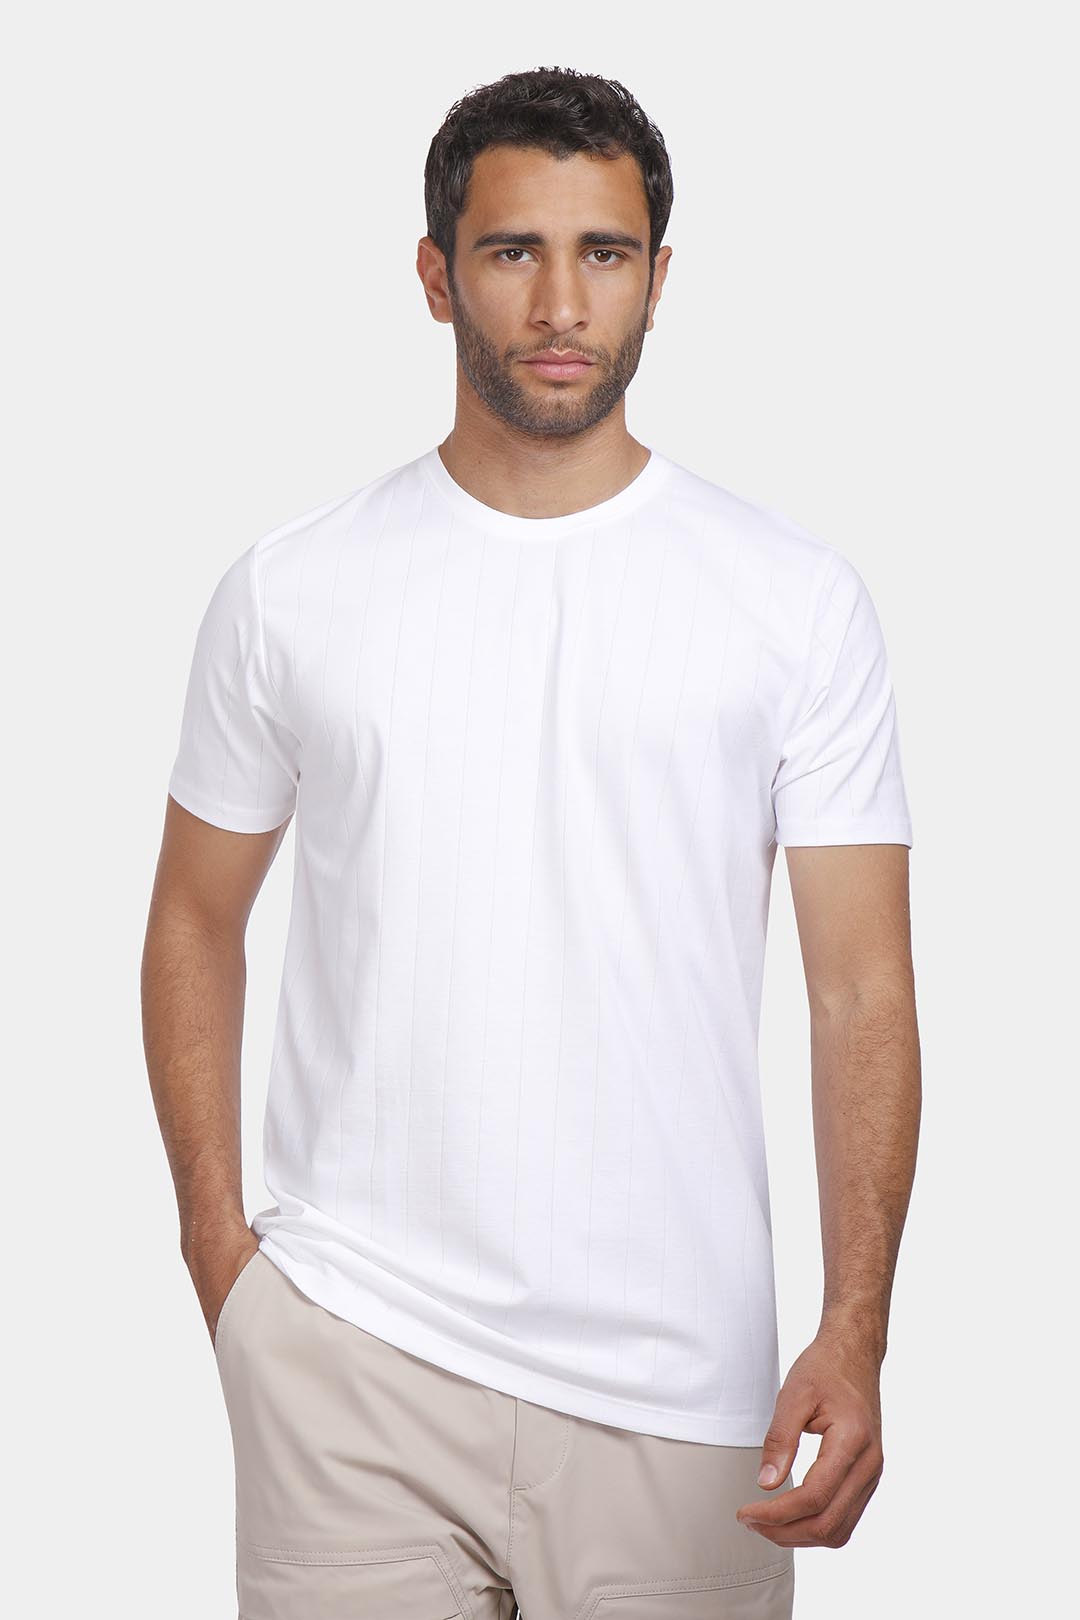 t-shirt white 002/S24/M202220